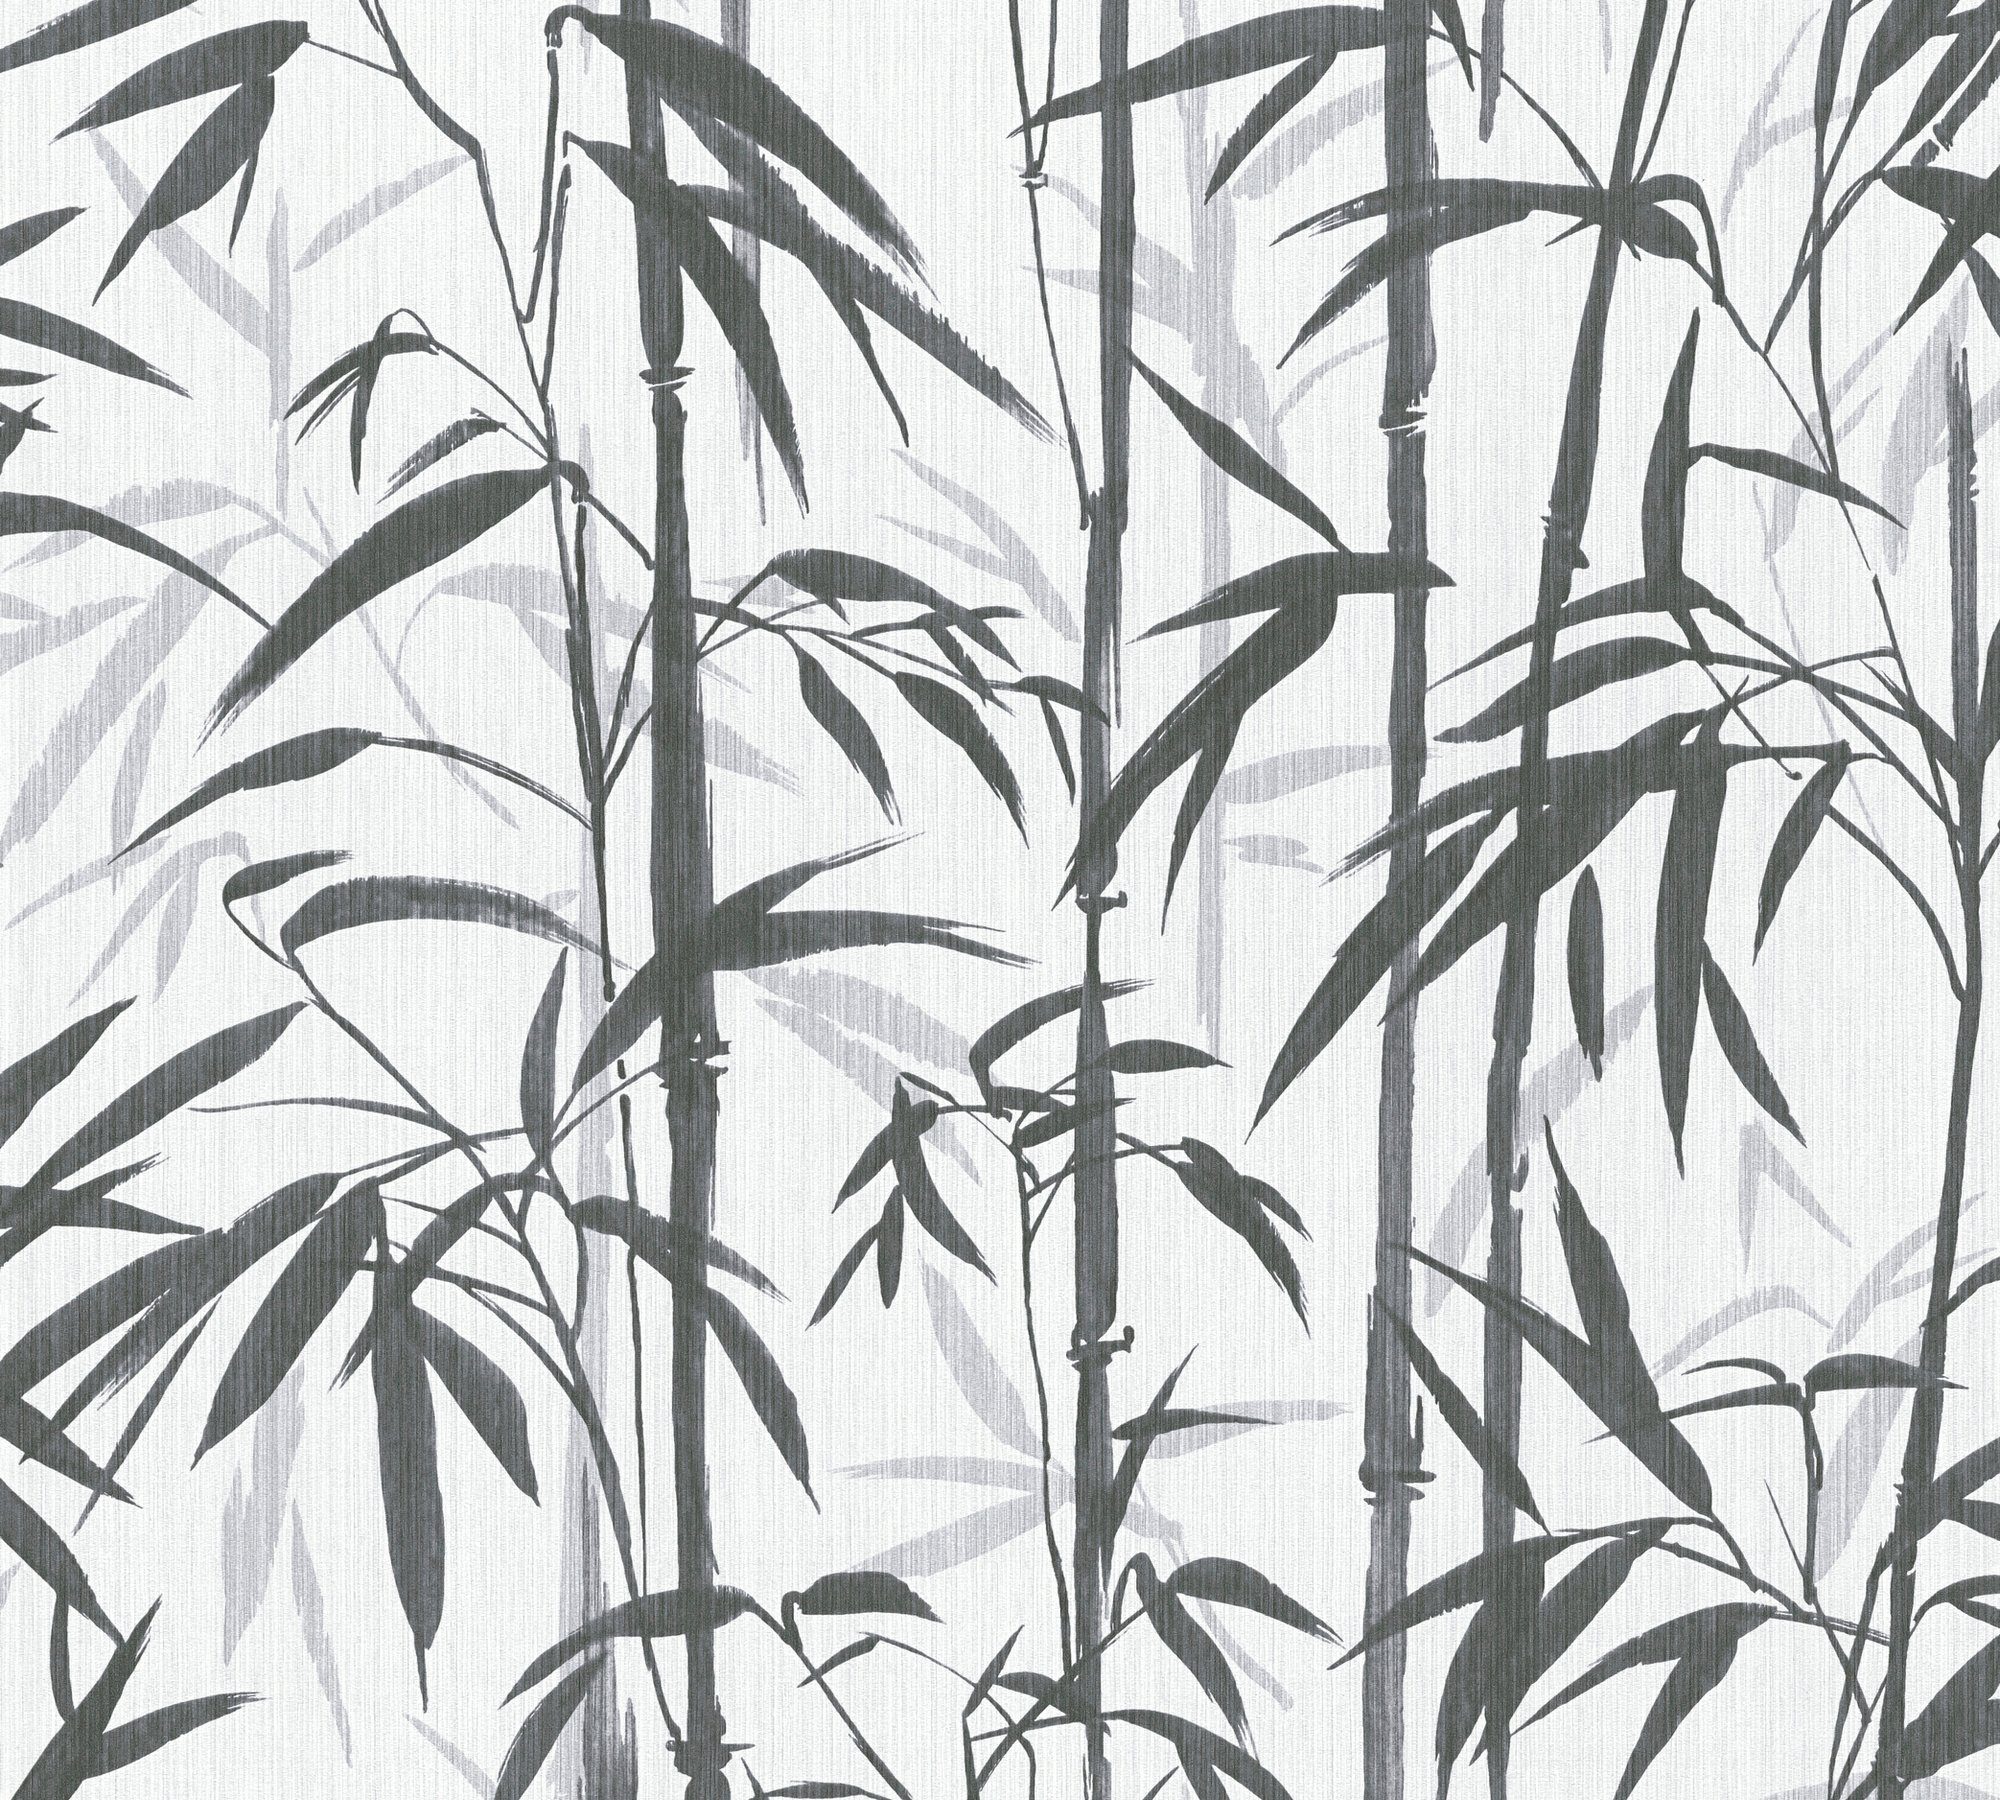 Bamboo, Tapete Vliestapete Bold Bambus Change Designertapete LIVING botanisch, floral, weiß/grau/schwarz good, METROPOLIS BY is MICHALSKY tropisch,